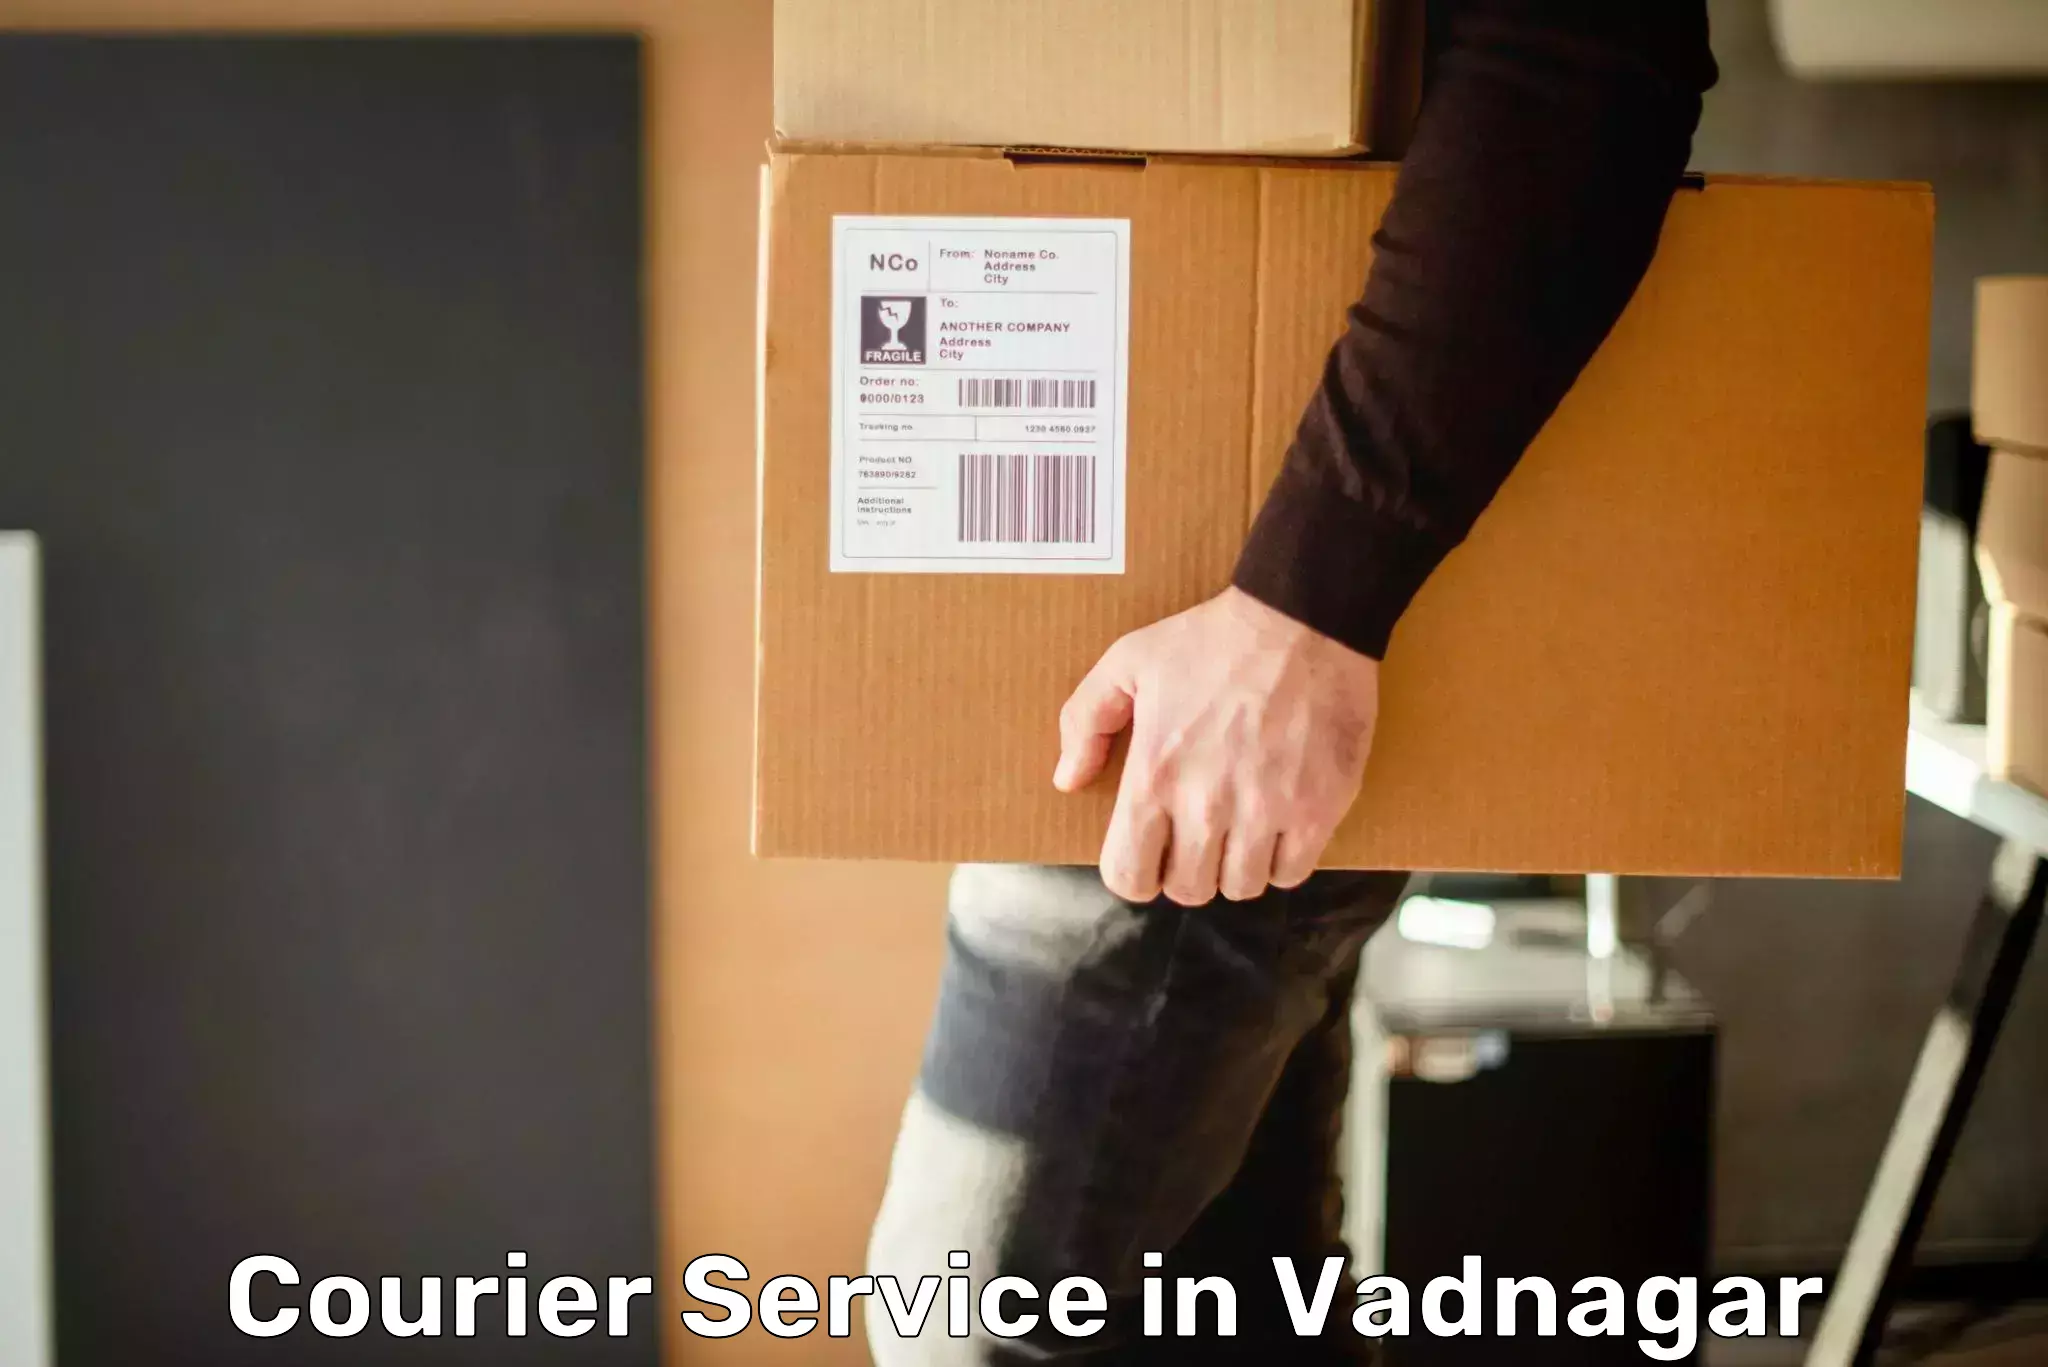 Cargo delivery service in Vadnagar